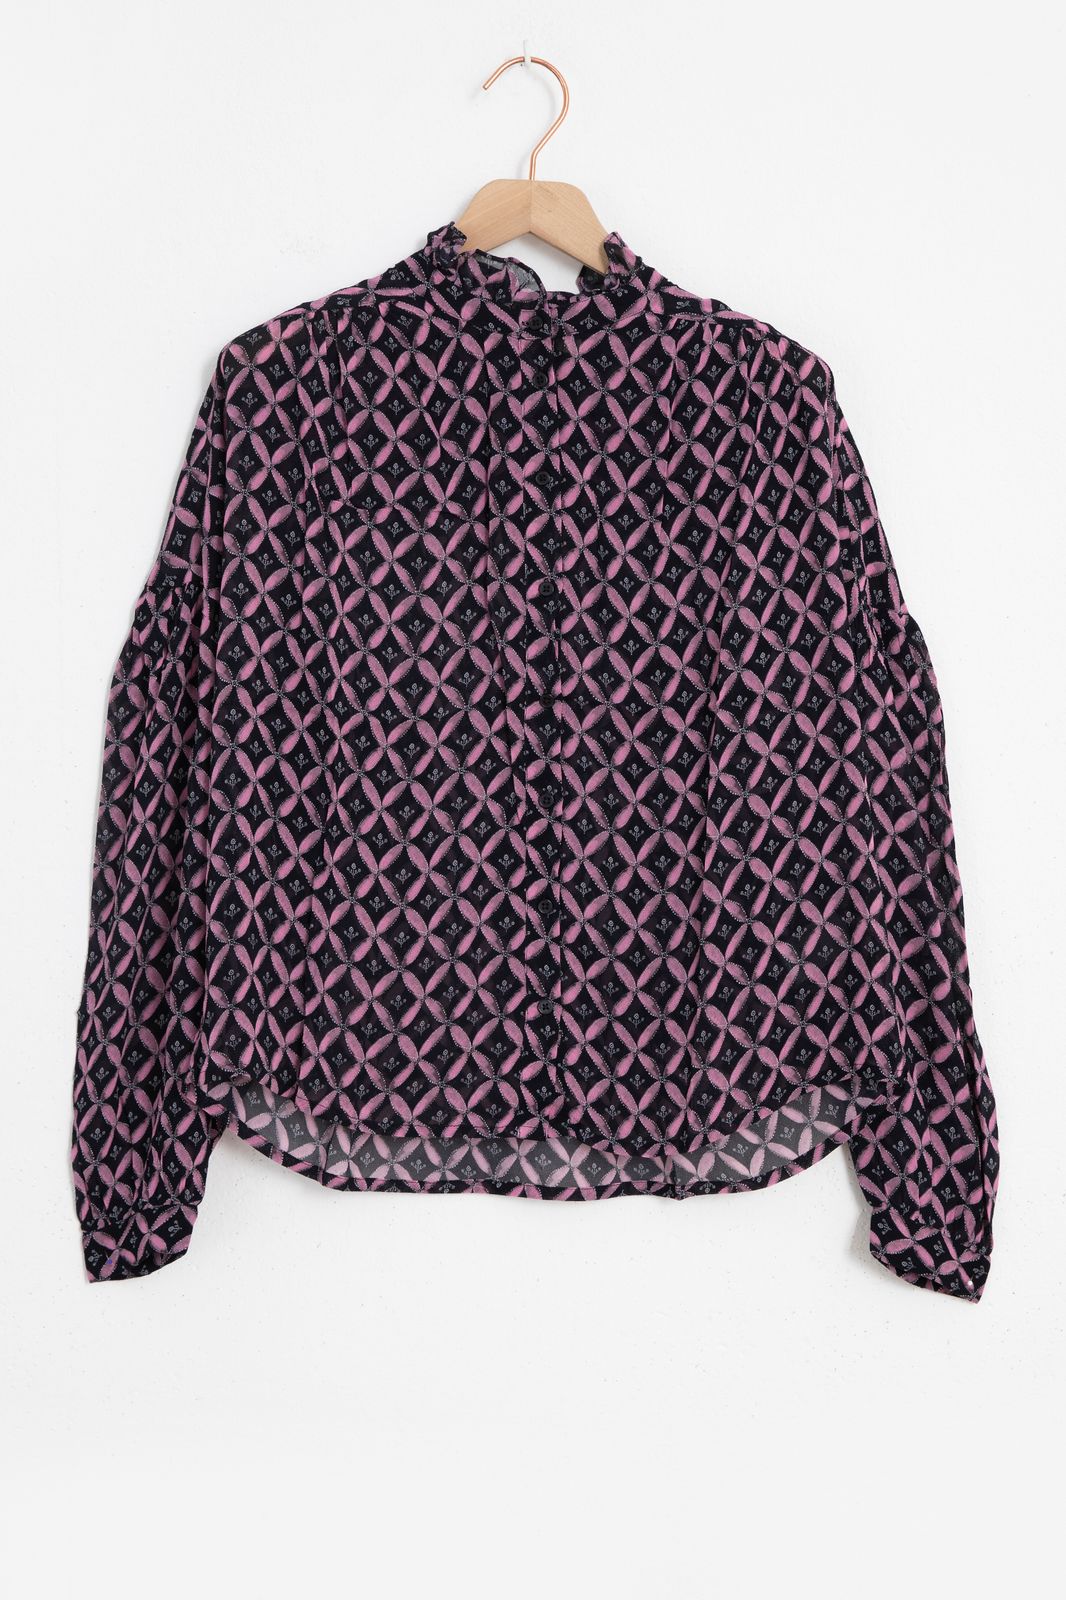 Bluse mit lila Print - schwarz